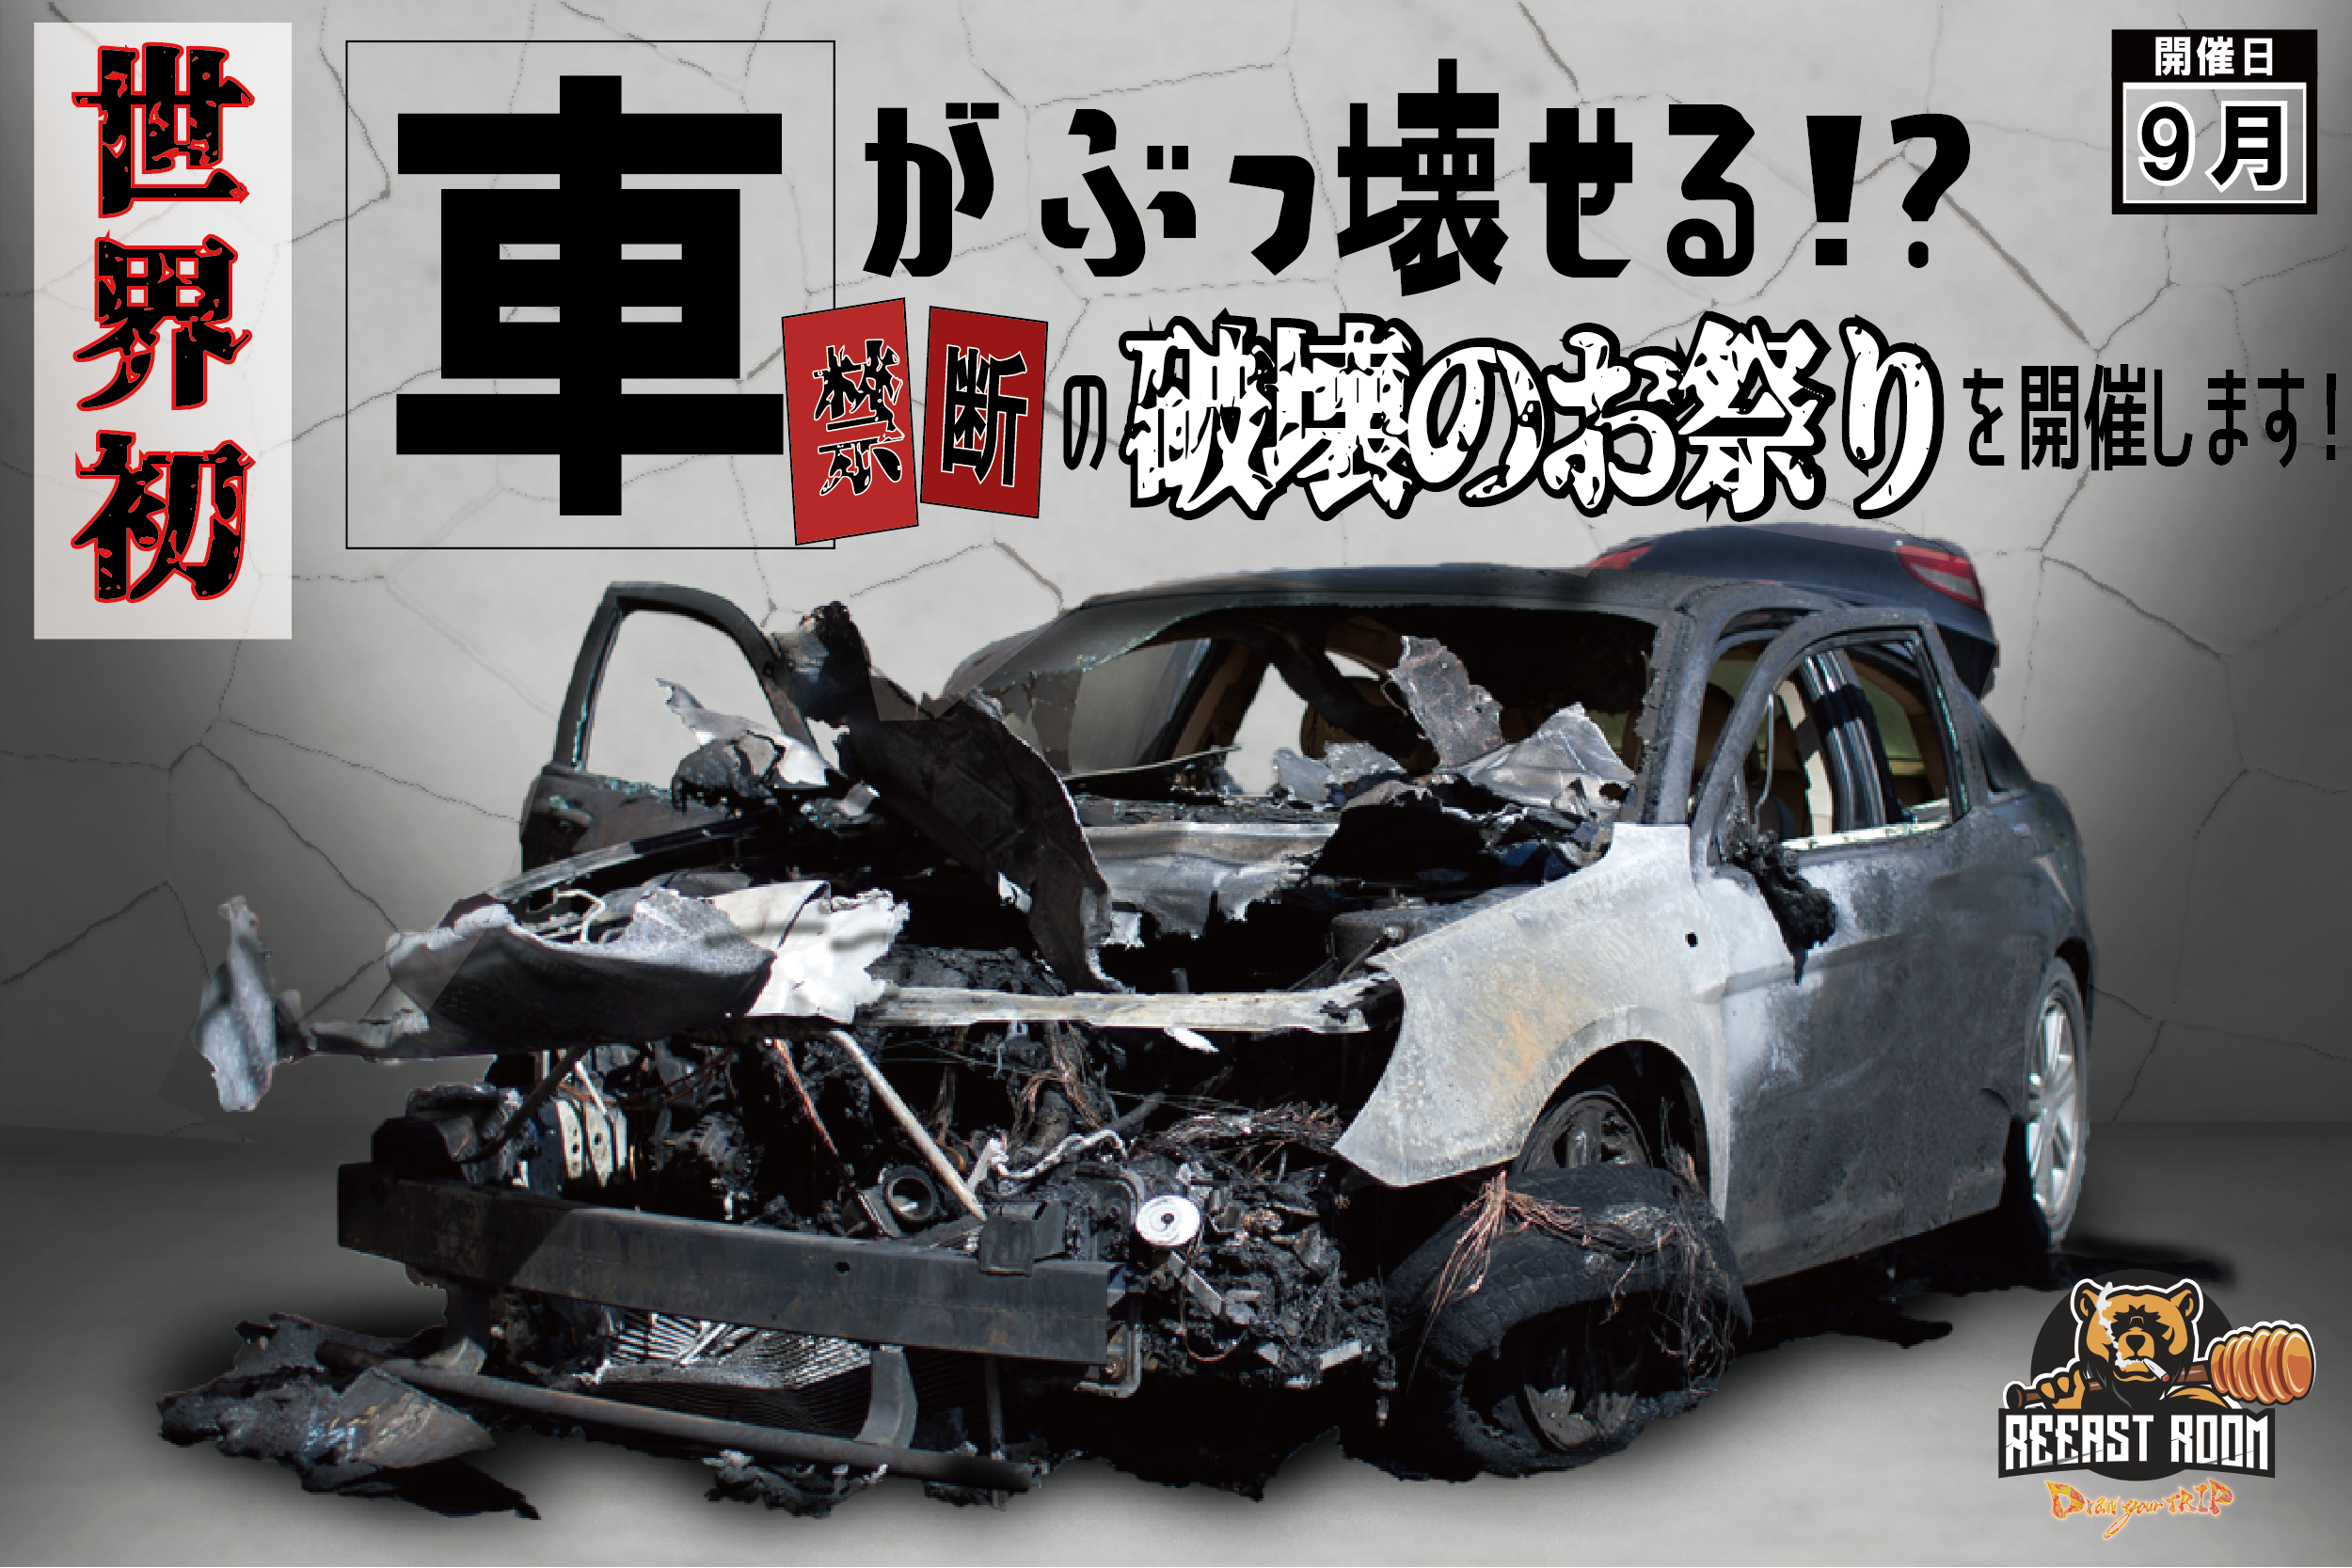 世界初 車 がぶっ壊せる 禁断の 破壊のお祭り を千葉県で9月5日 土 に開催します 株式会社brickwallのプレスリリース